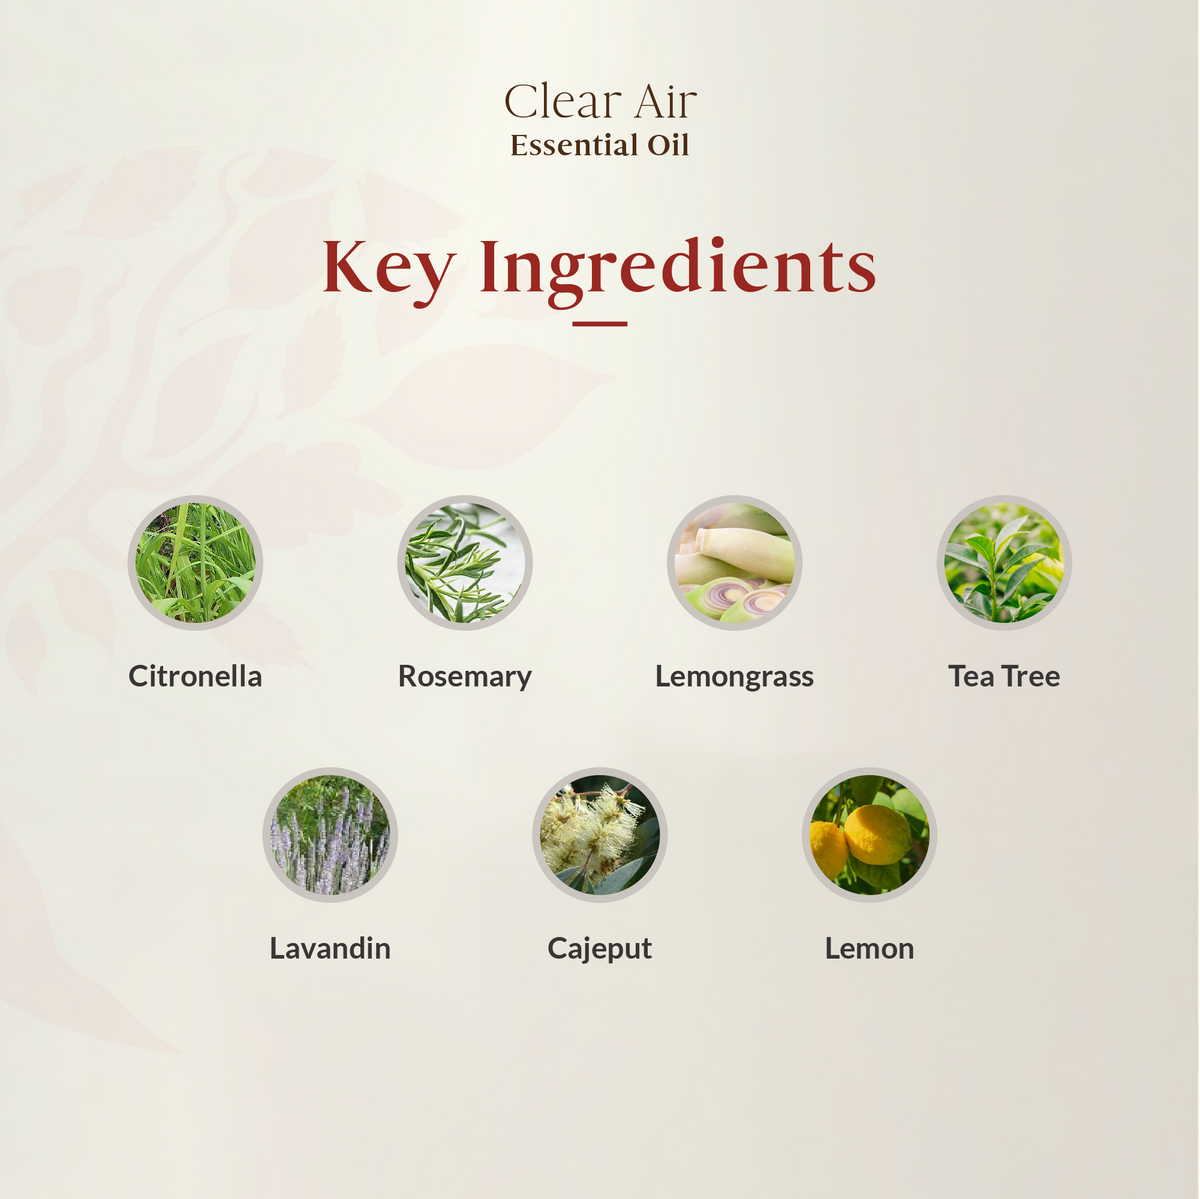 Clear Air Essential Oil Blend 15ml